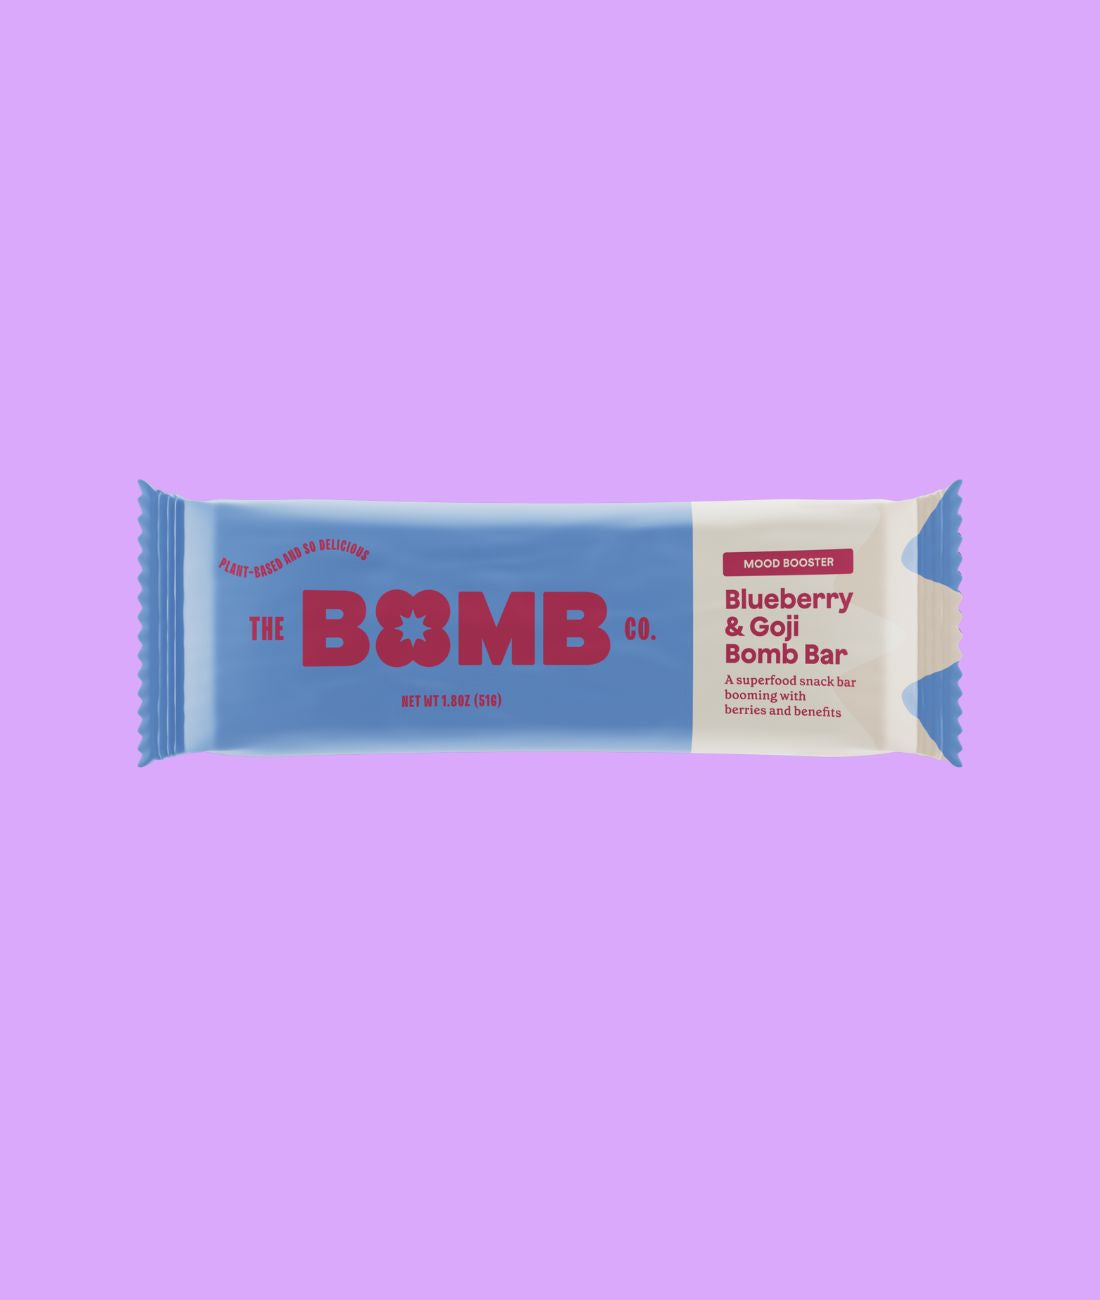 Blueberry & Goji Blender Bombs Bomb Bar